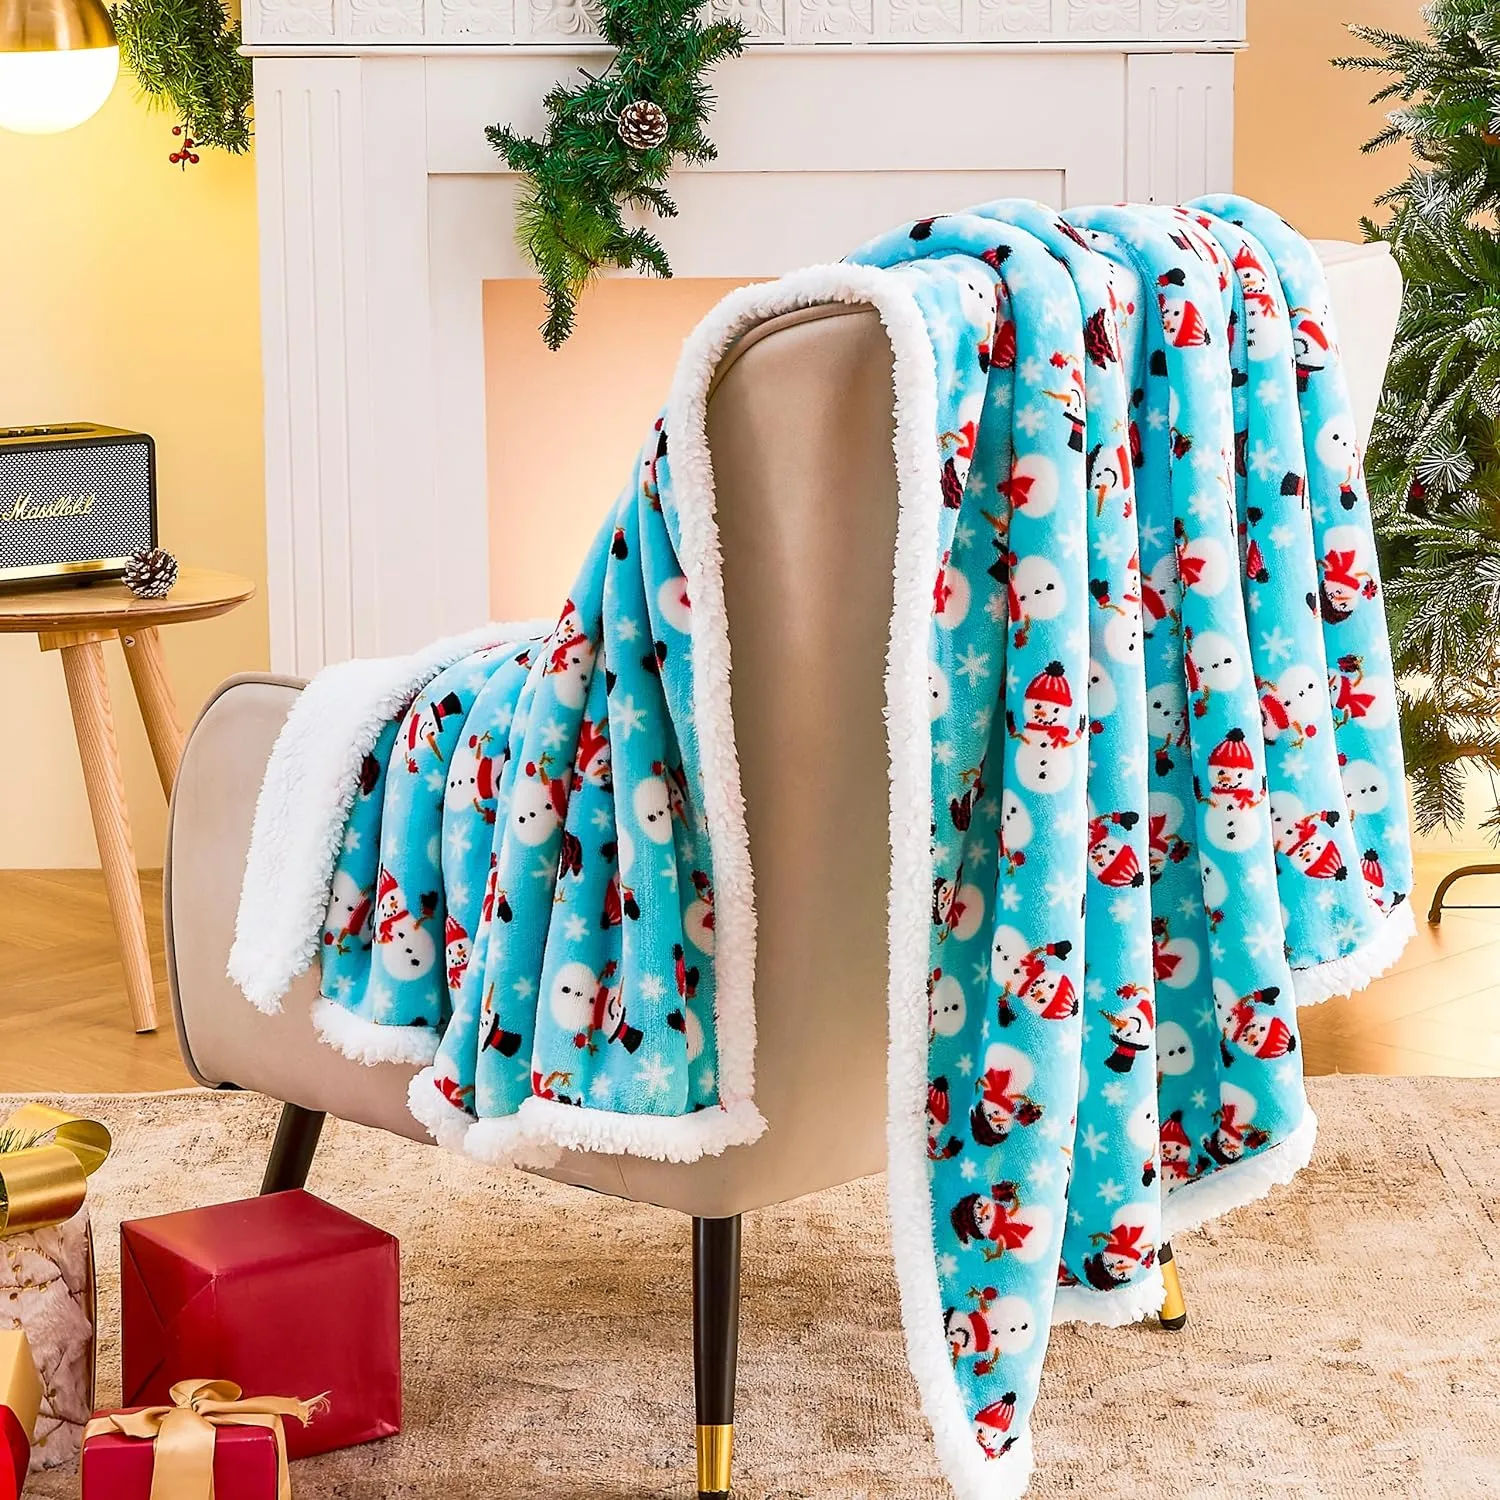 Couverture de Noël, couverture d’ornement de Noël, confort moelleux, couverture de vacances d’hiver Sherpa en laine douce et chaude, lit, canapé